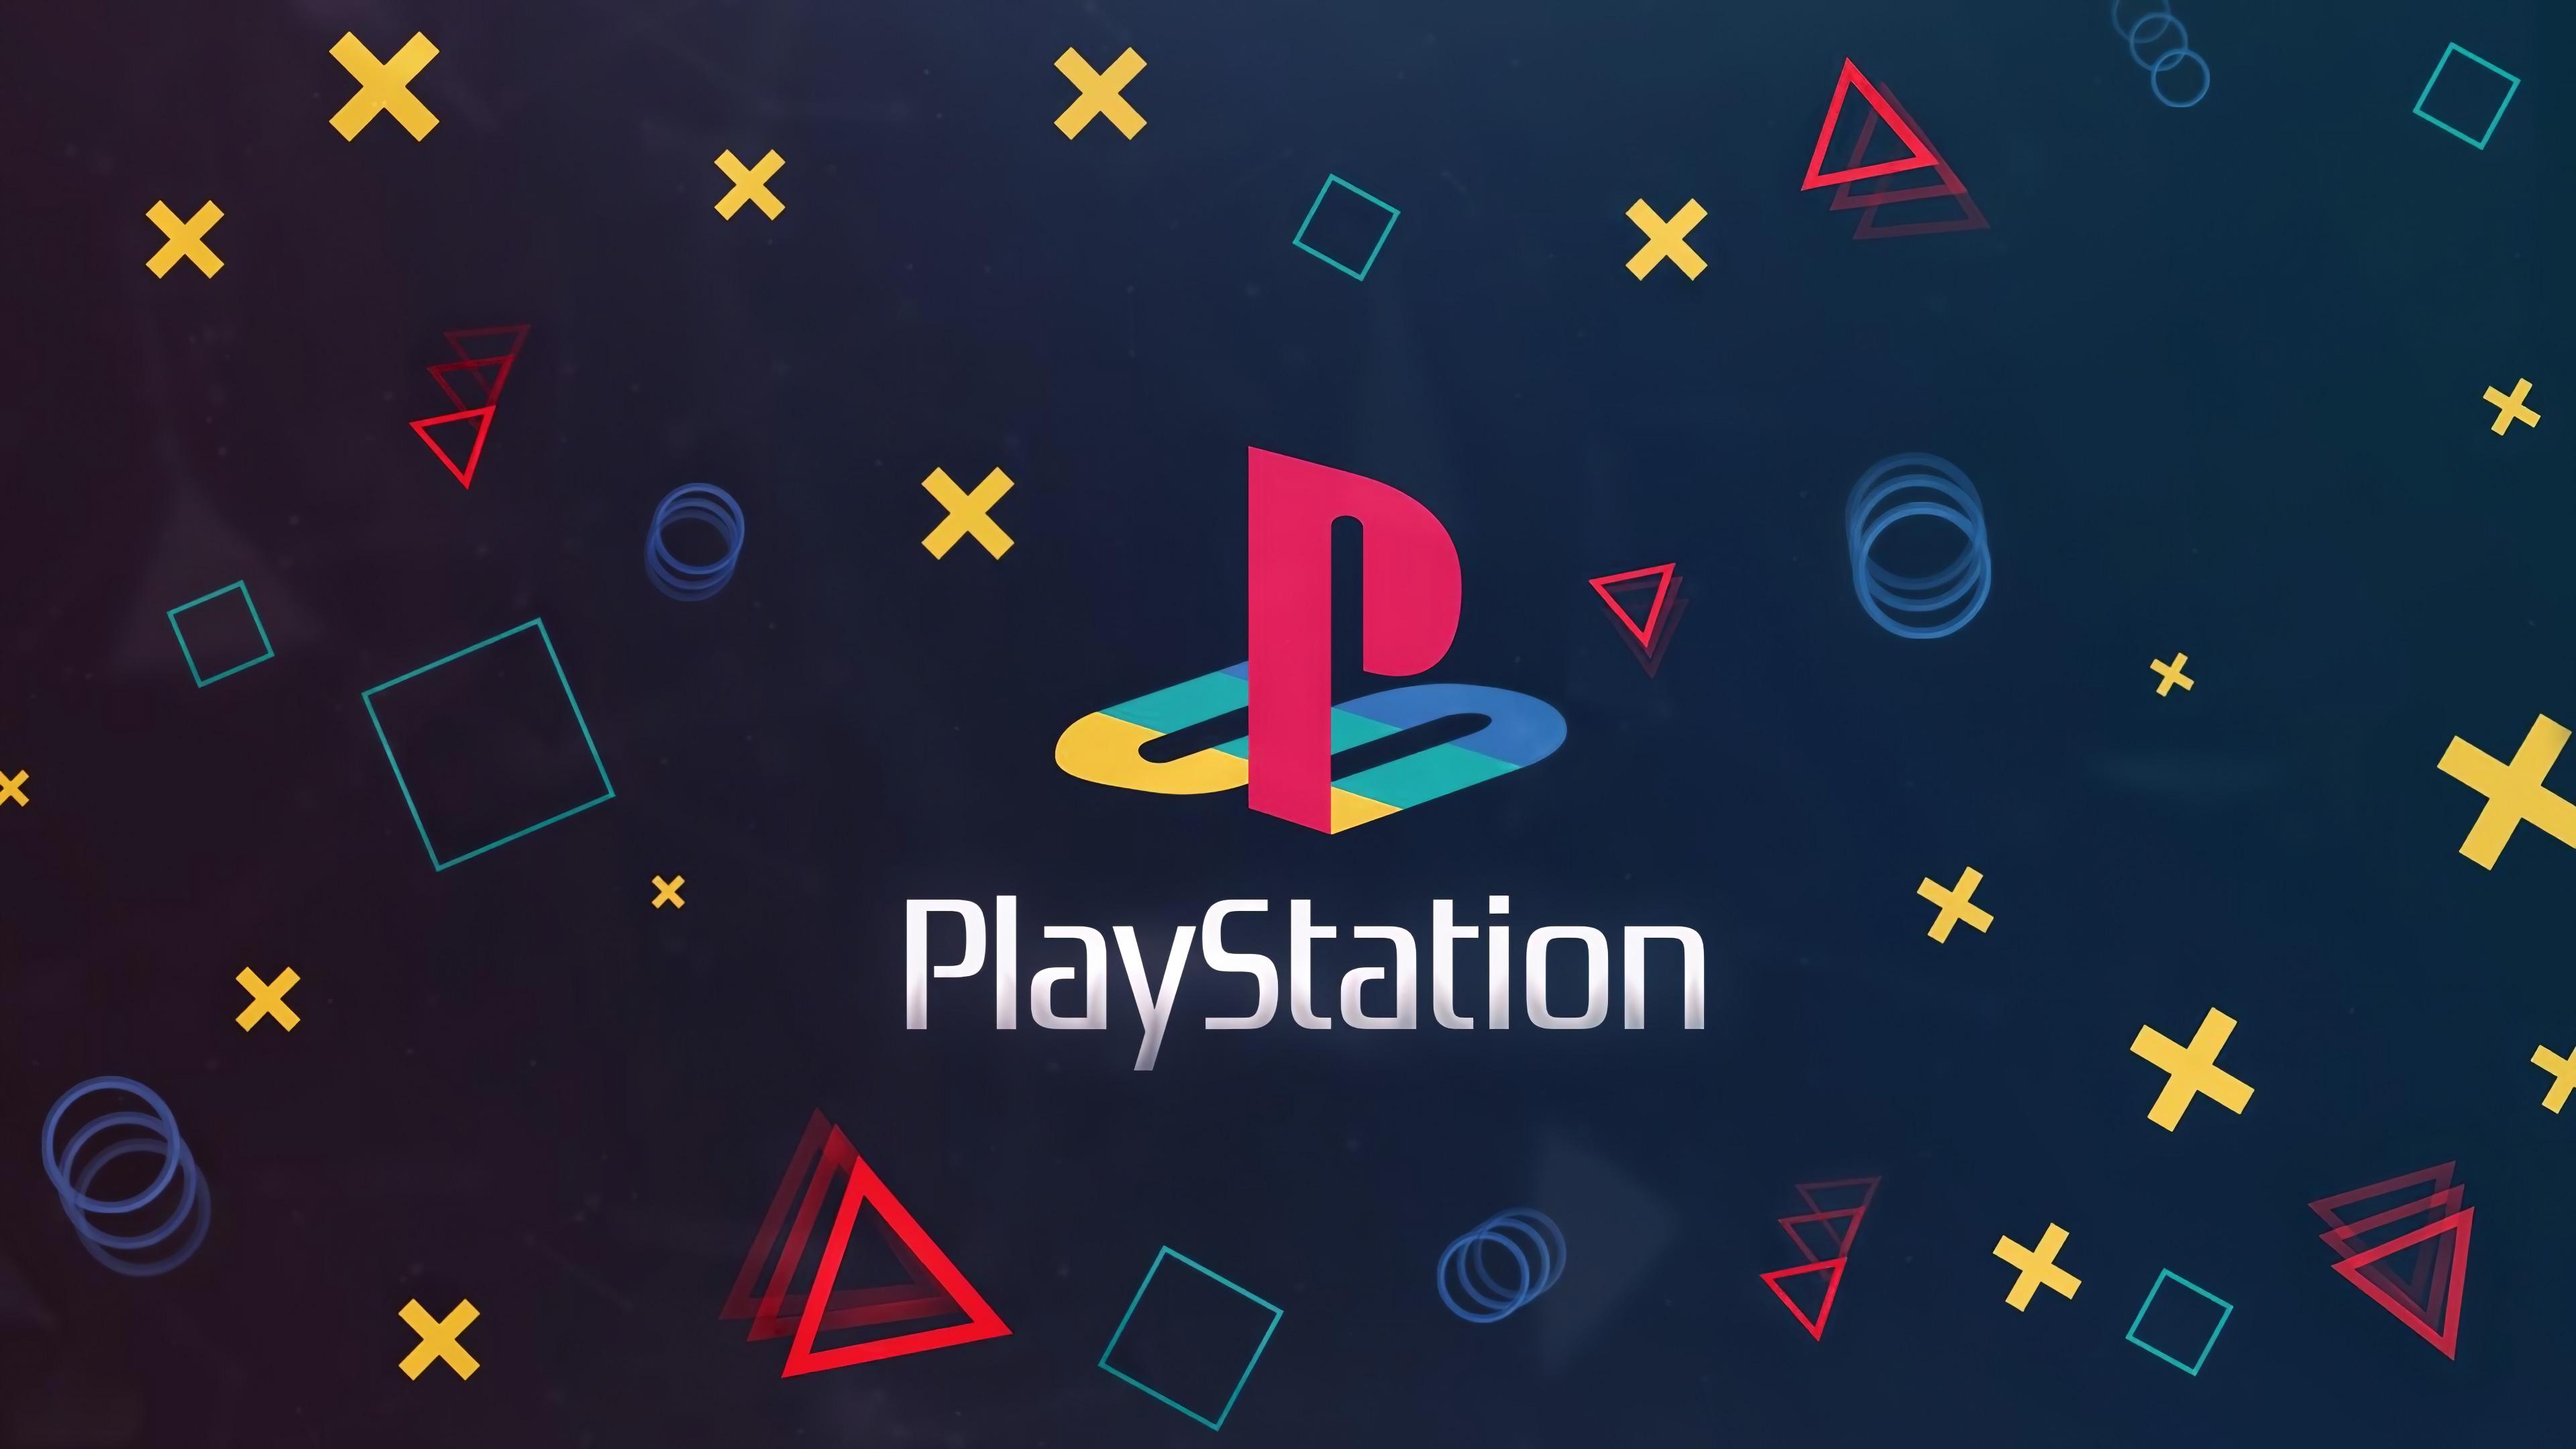 Logotipo do PlayStation em um fundo escuro com vários botões do controlador.